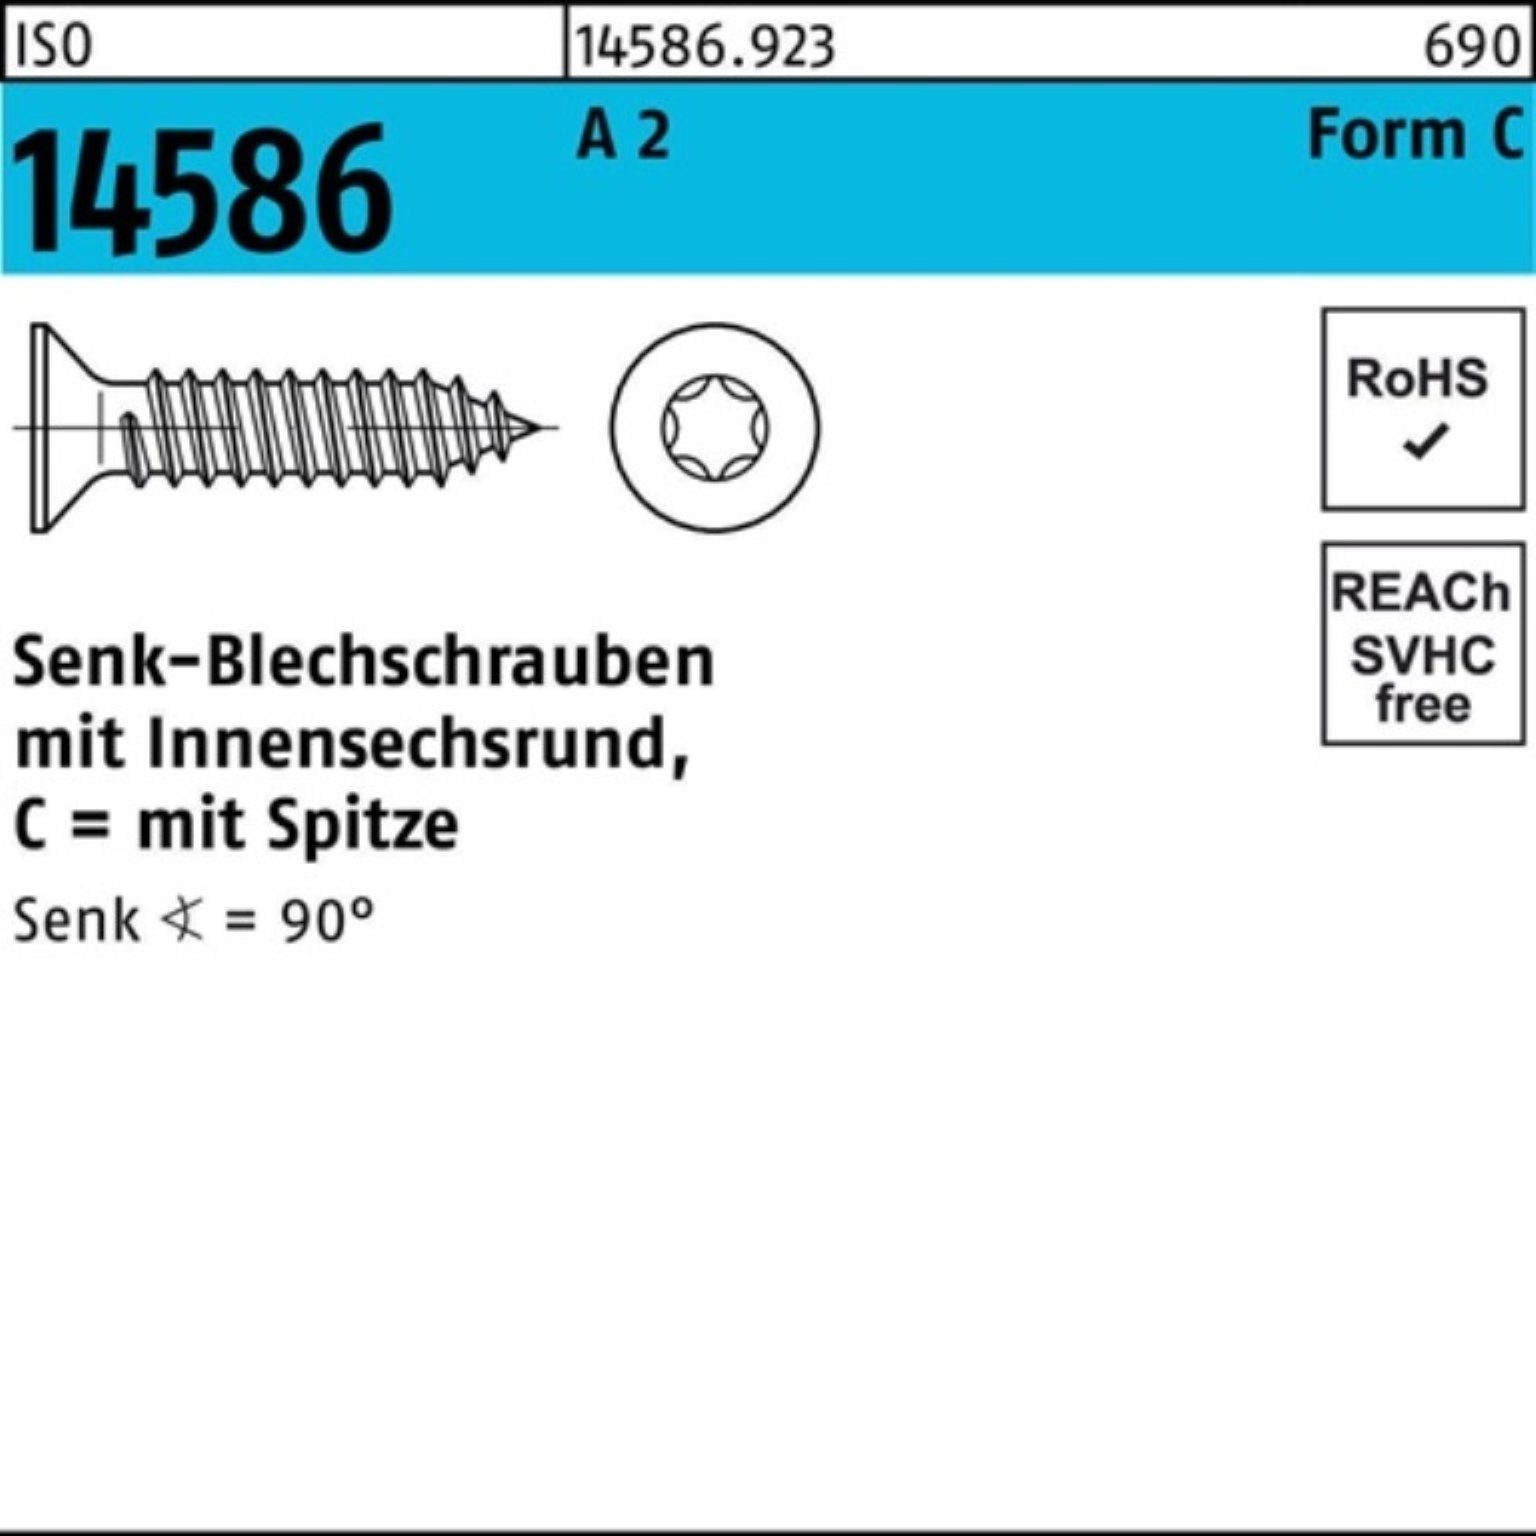 Reyher Schraube 250er Pack 2 ISO 2 -C T25 5,5x Senkblechschraube A ISR/Spitze 80 14586